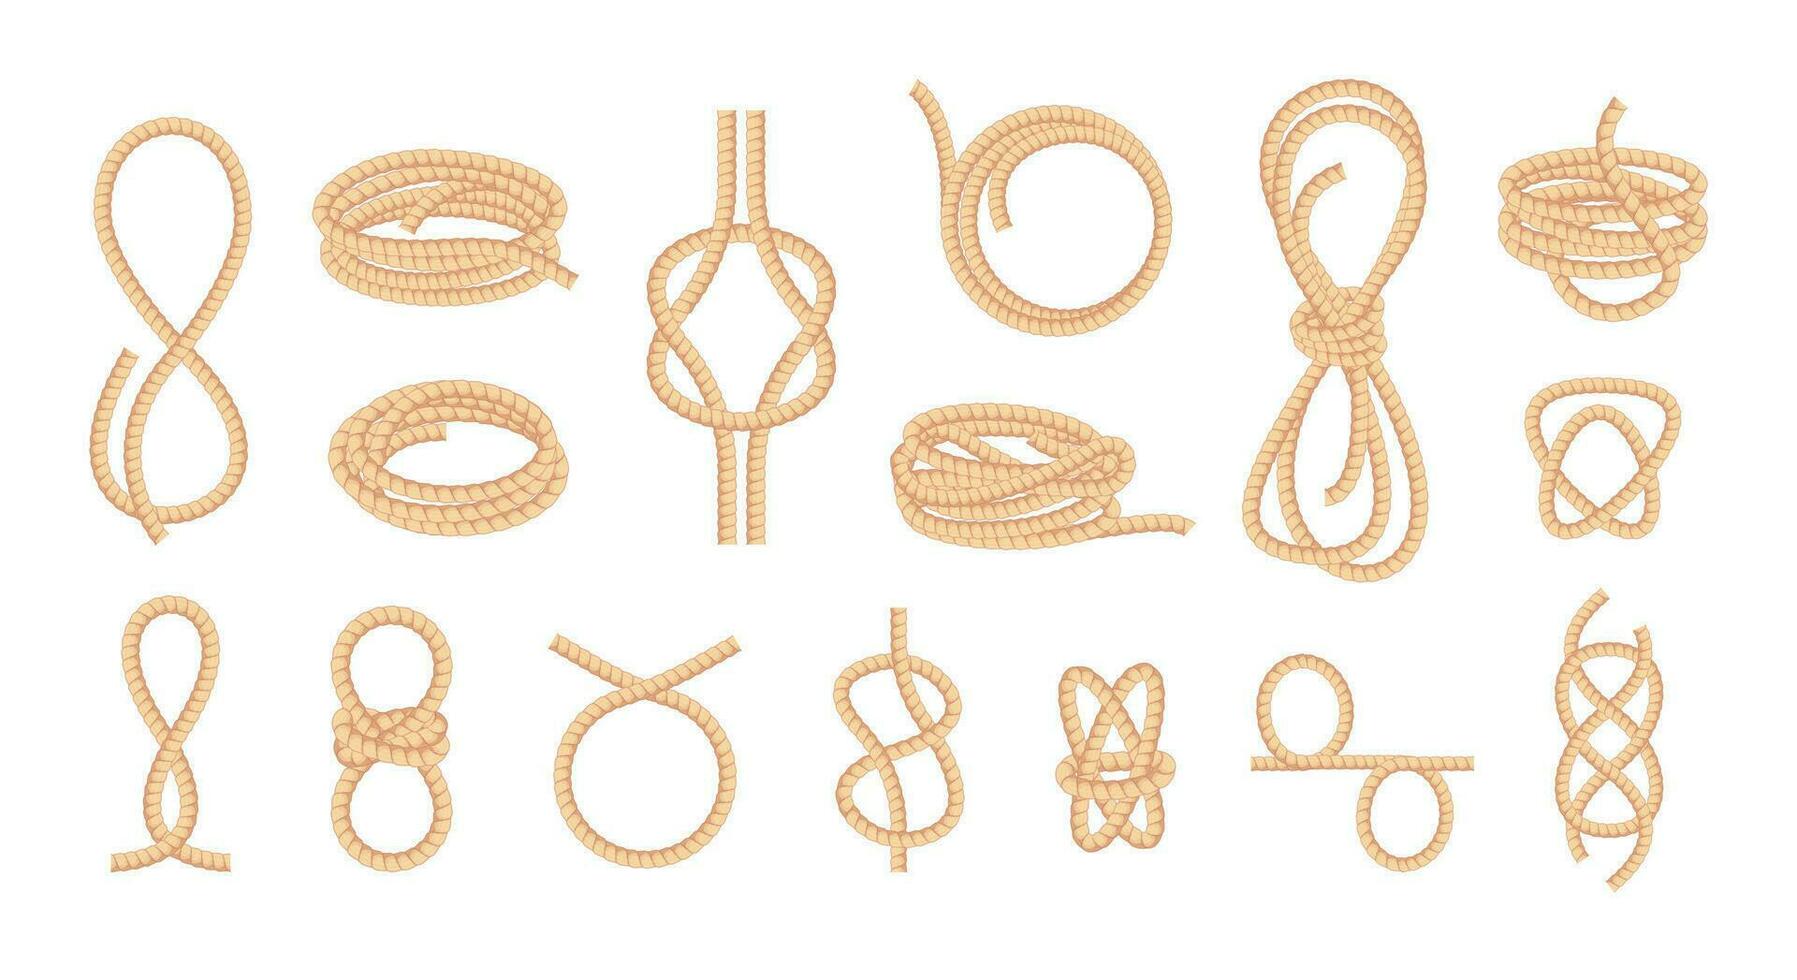 anudado cuerdas serpenteado bowknot retorcido curva Derecho fibra hilo, trenzado cable nudo cuerda Corbata elementos dibujos animados plano estilo. vector aislado colección